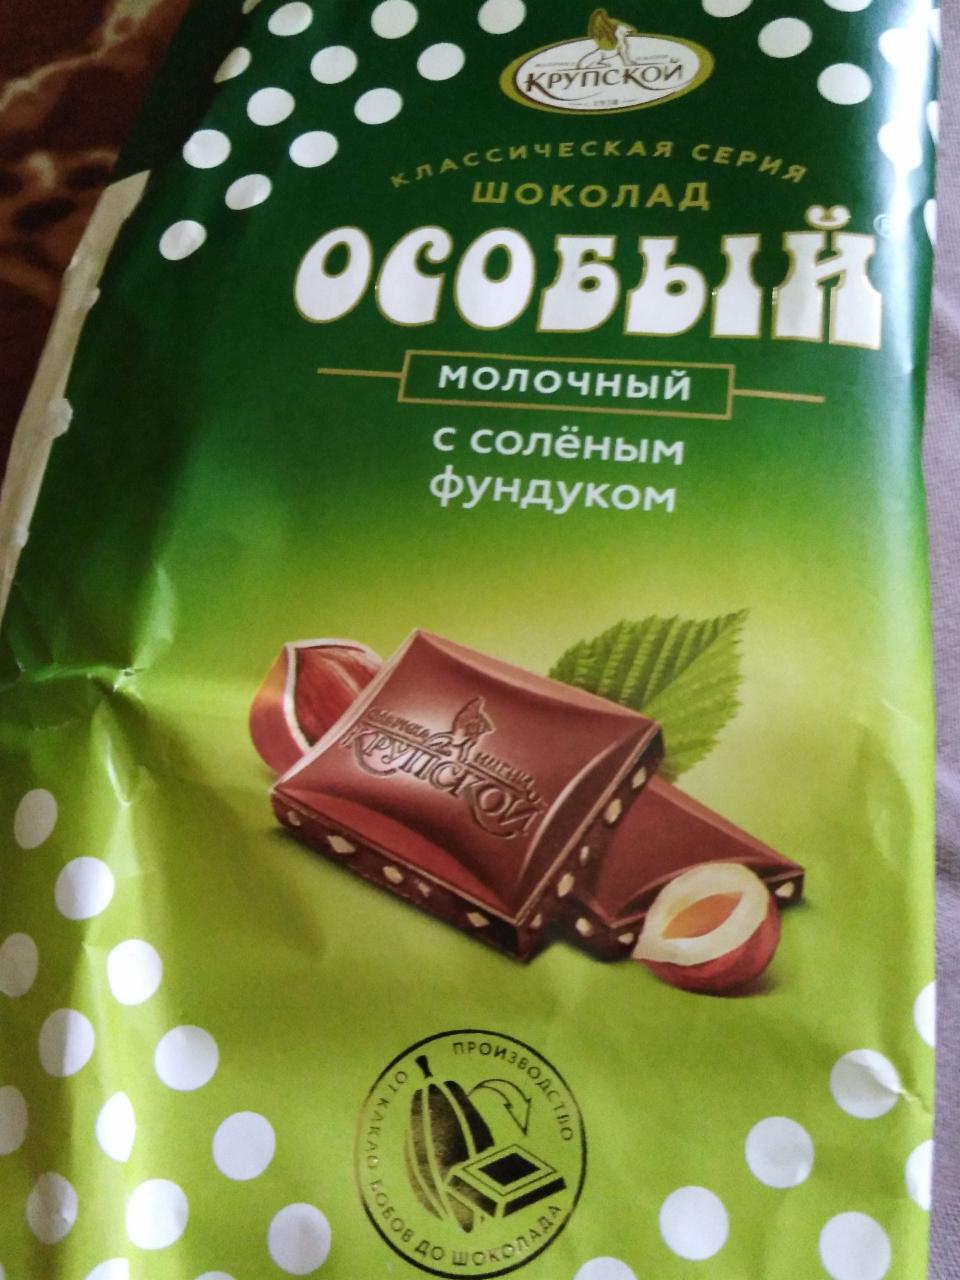 Фото - Молочный шоколад особый с солёными фундуком Крупской